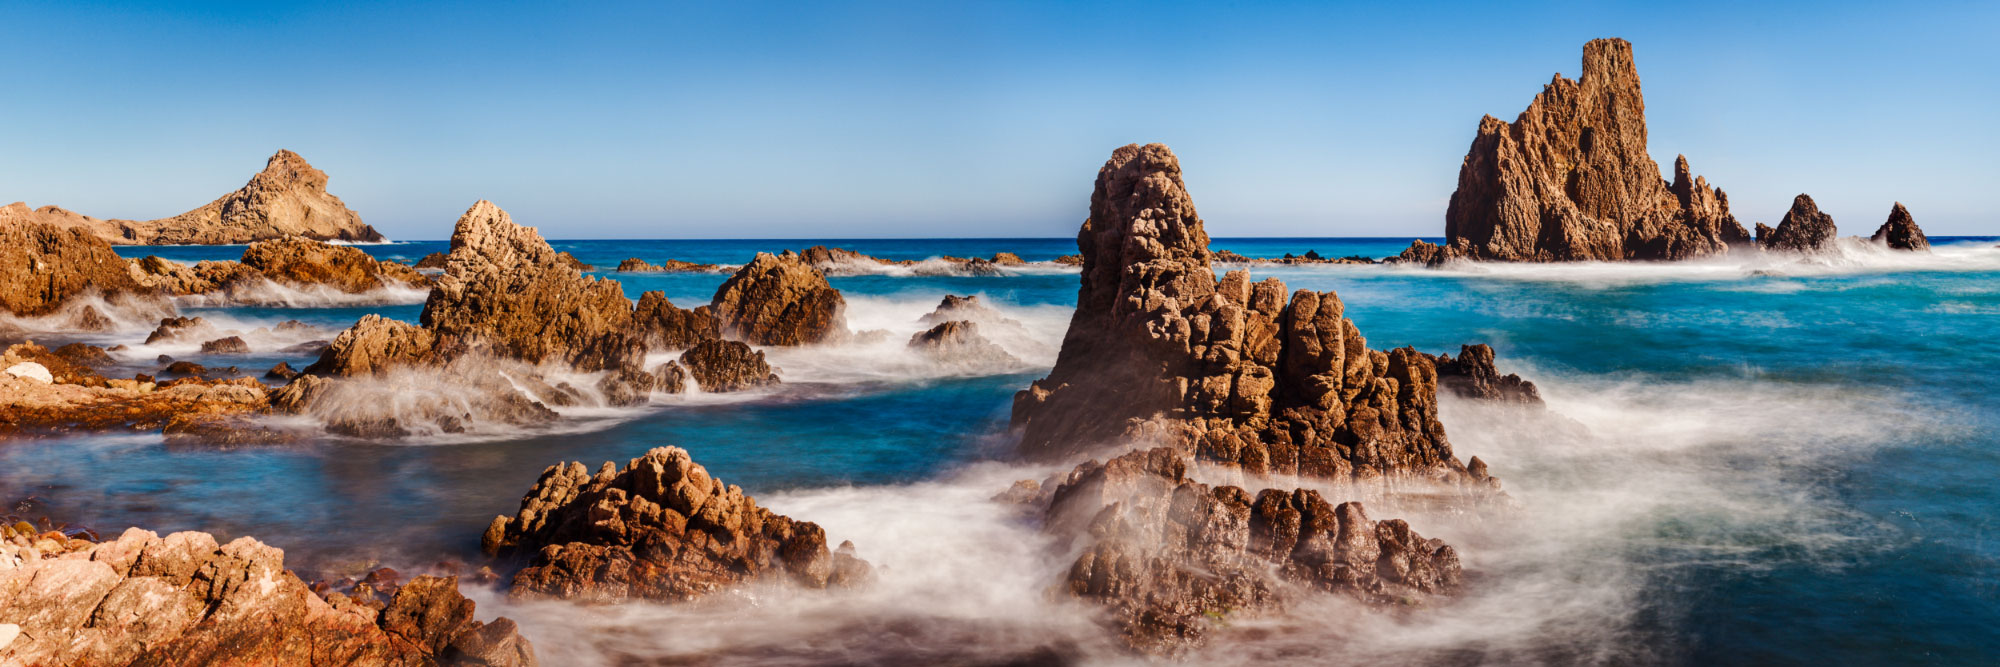 Récif des Sirènes, Cabo de Gata